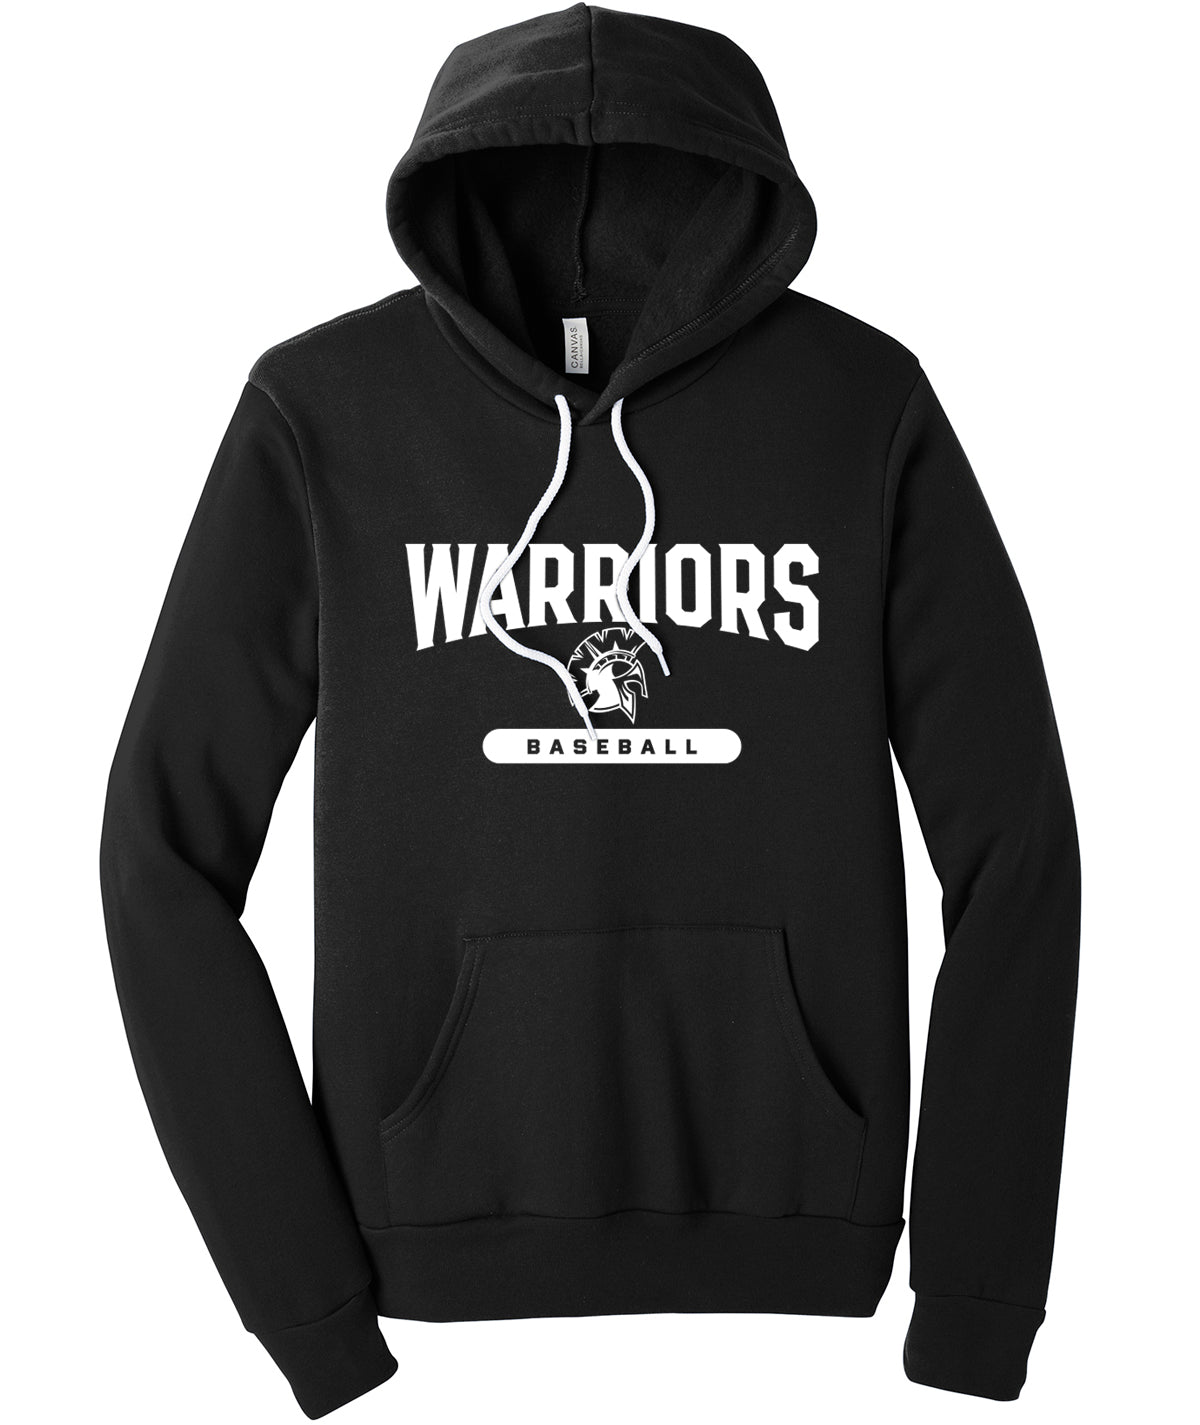 Warriors Baseball Softstyle Hooded Sweatshirt